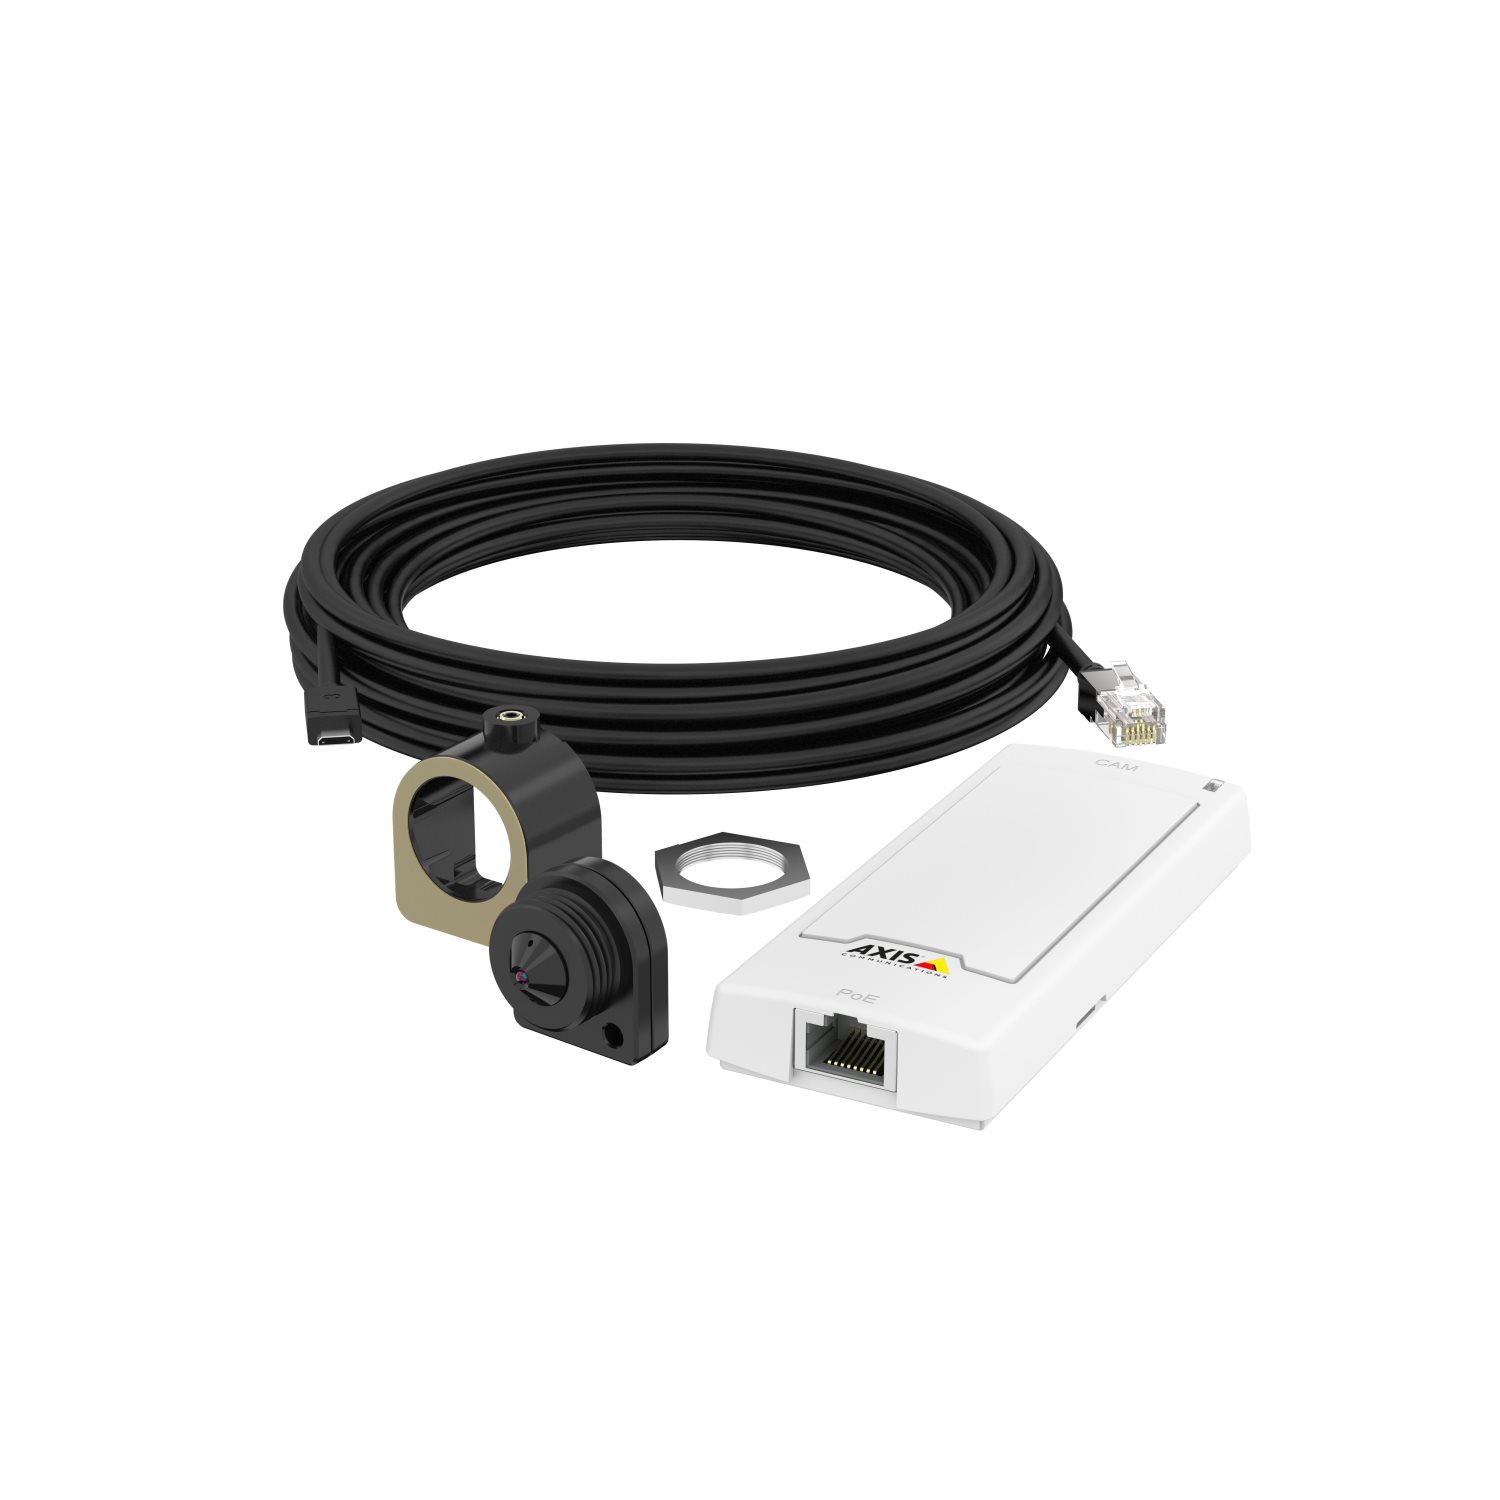  Caméras discrètes / Objectifs déportés Caméra miniature IP fixe jour INT P1265 0927-001